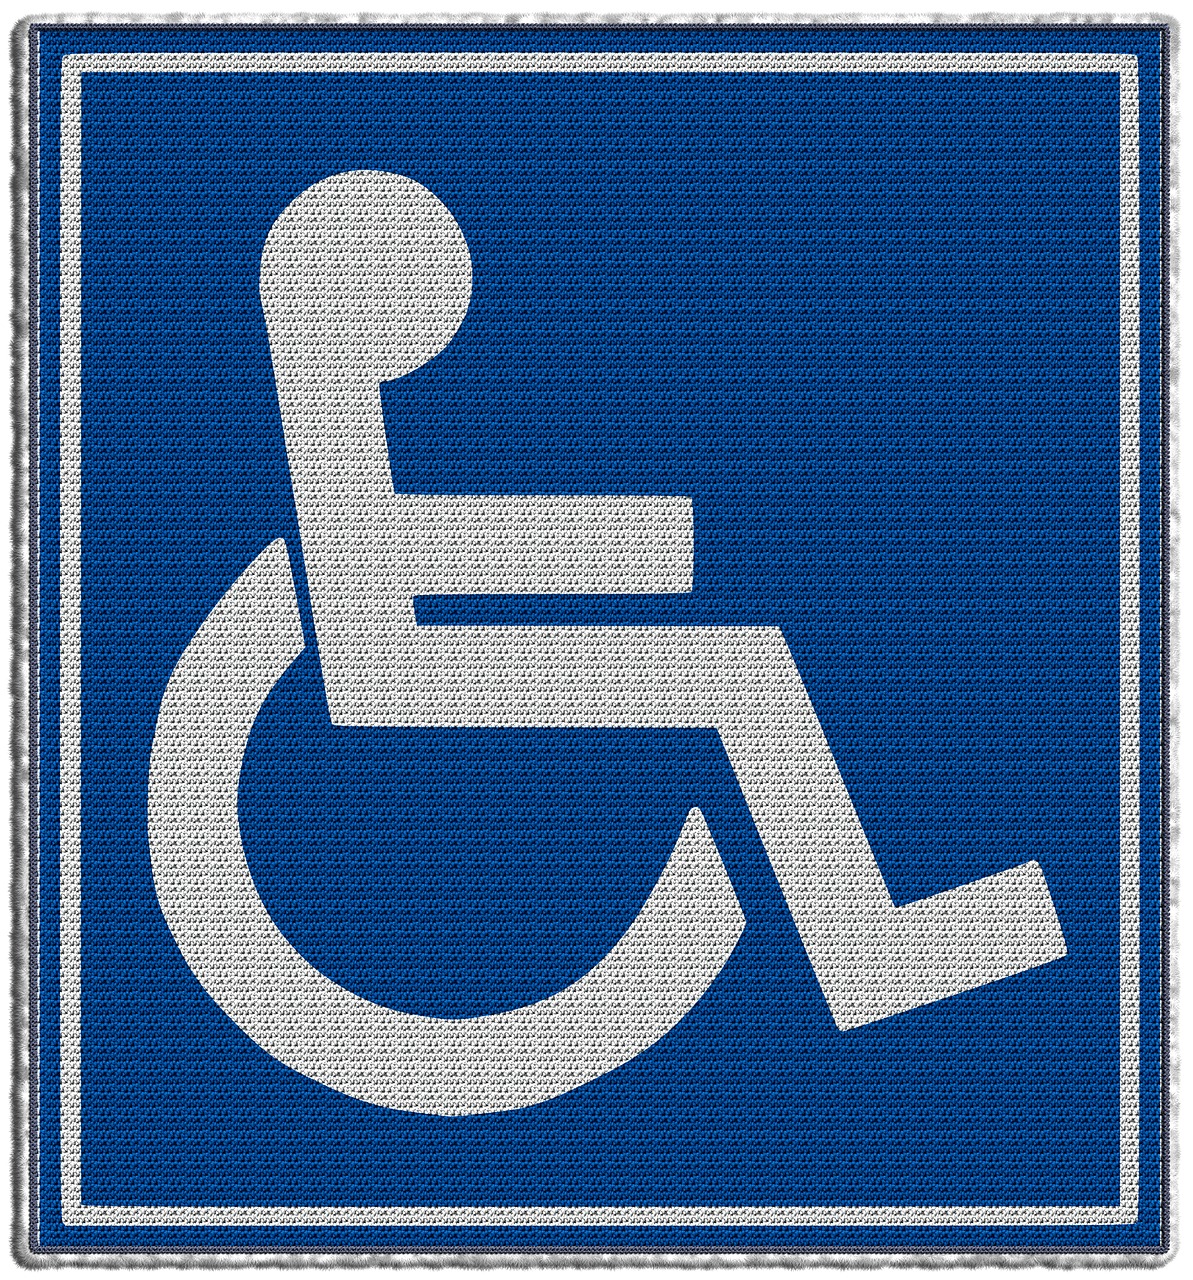 Neįgaliųjų Vežimėlis, Neįgalus, Negalia, Negalia, Neįgaliųjų Vežimėlių Vartotojai, Fizinė Negalia, Skydas, Rolli, Smarkiai Neįgalus, Lame